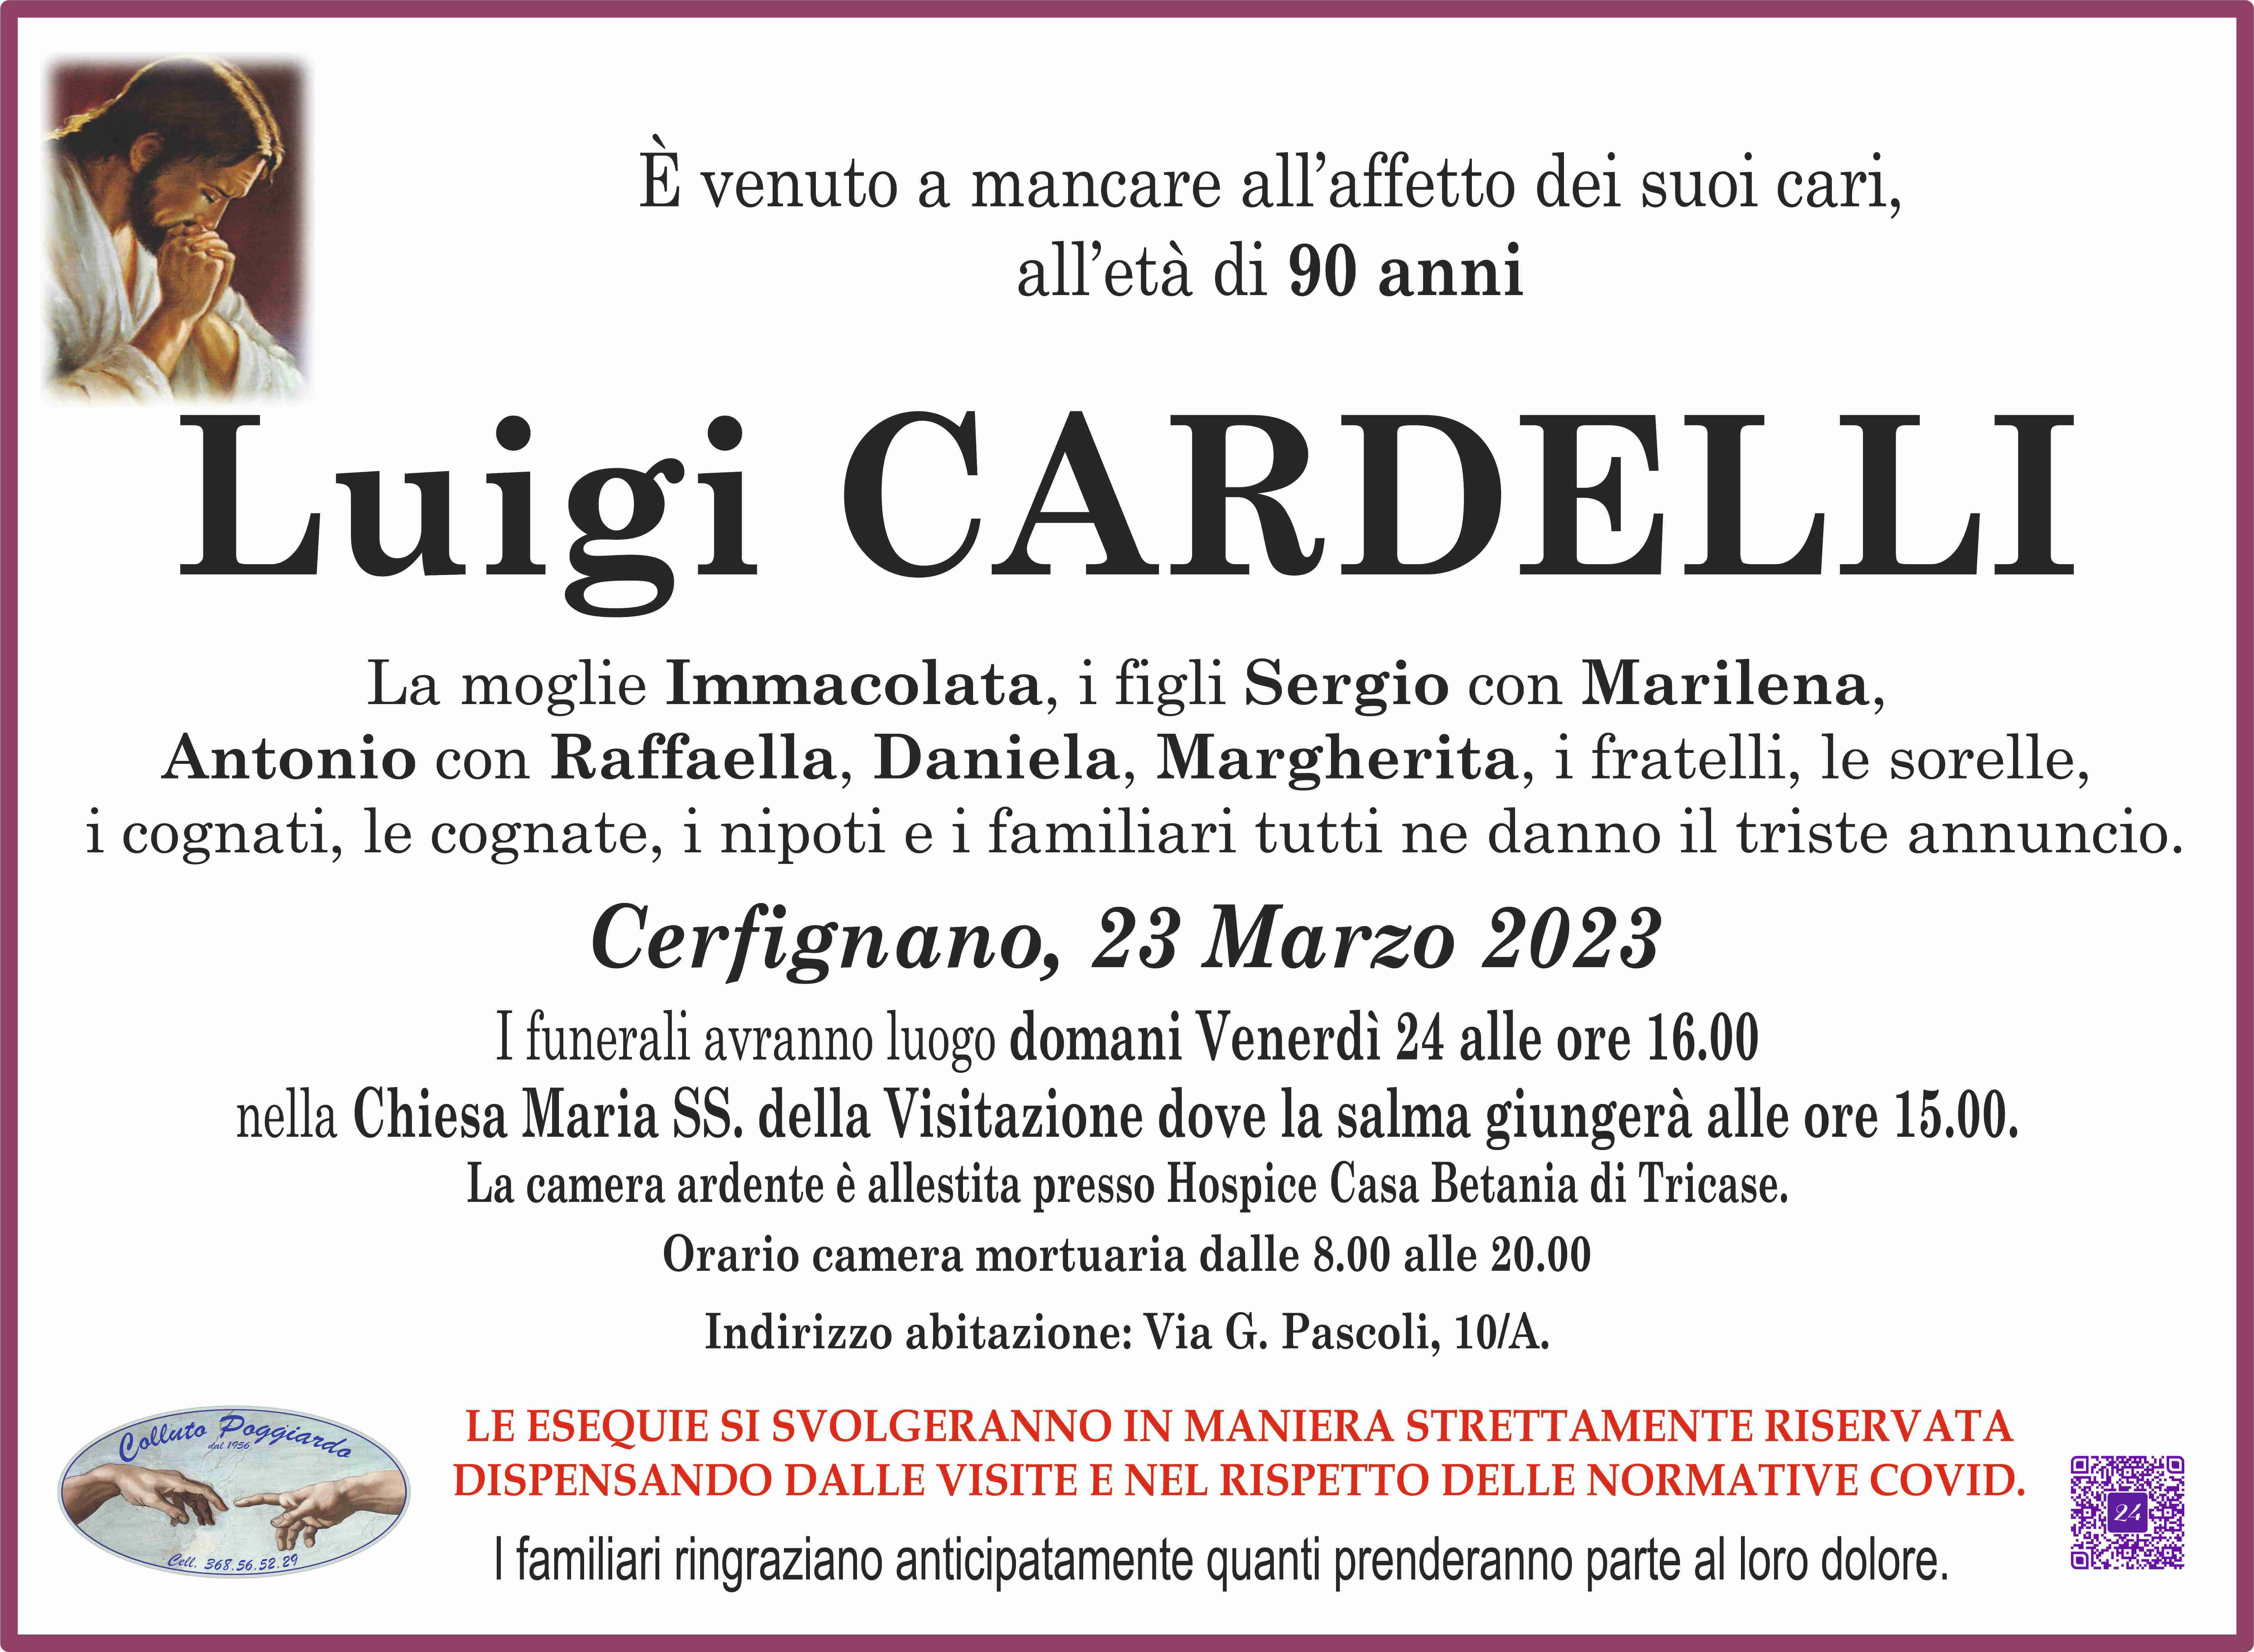 Luigi Cardelli